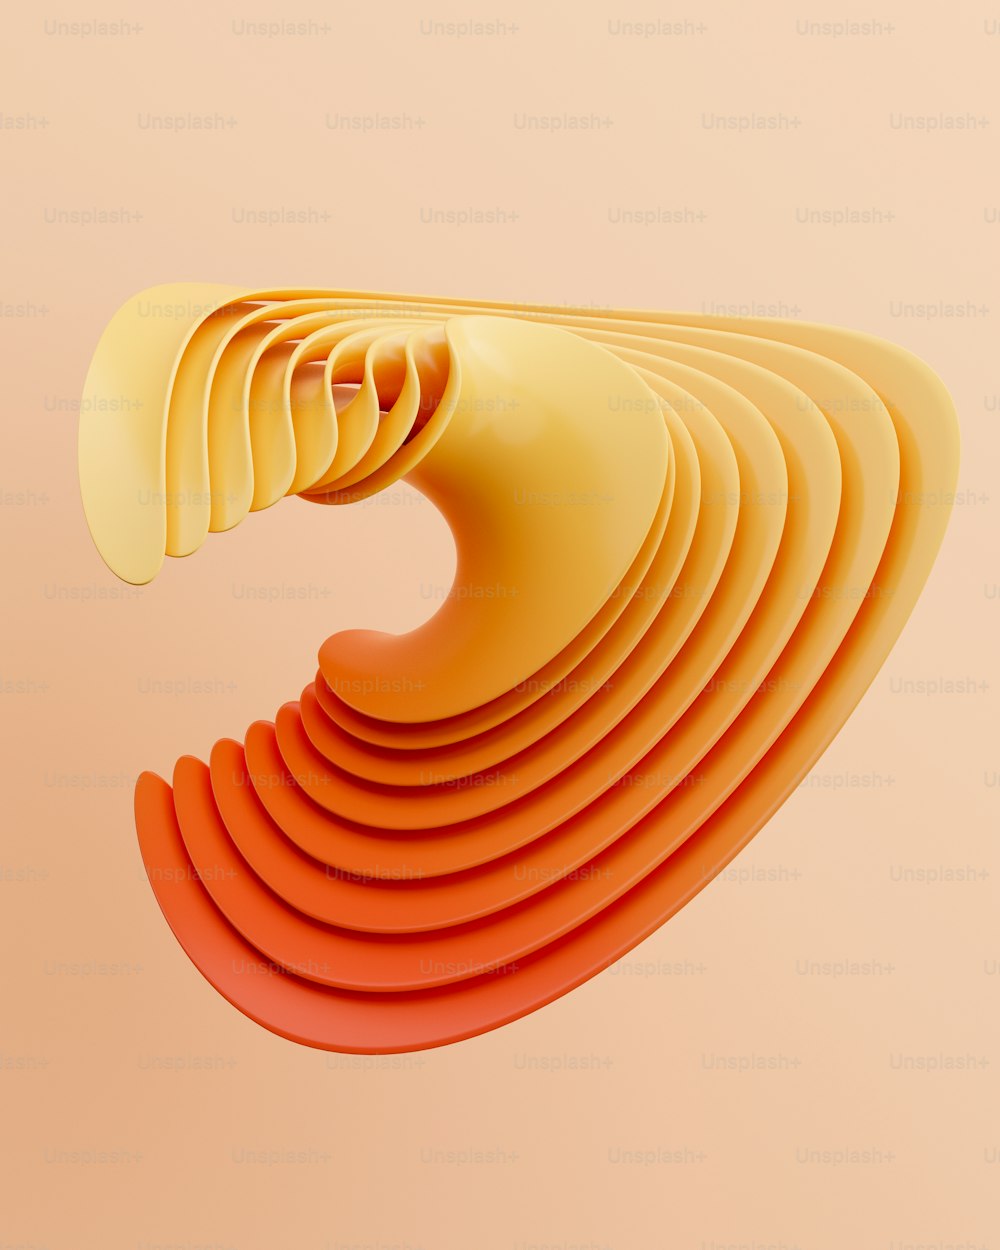 Ein abstraktes Bild eines gekrümmten orangefarbenen Objekts